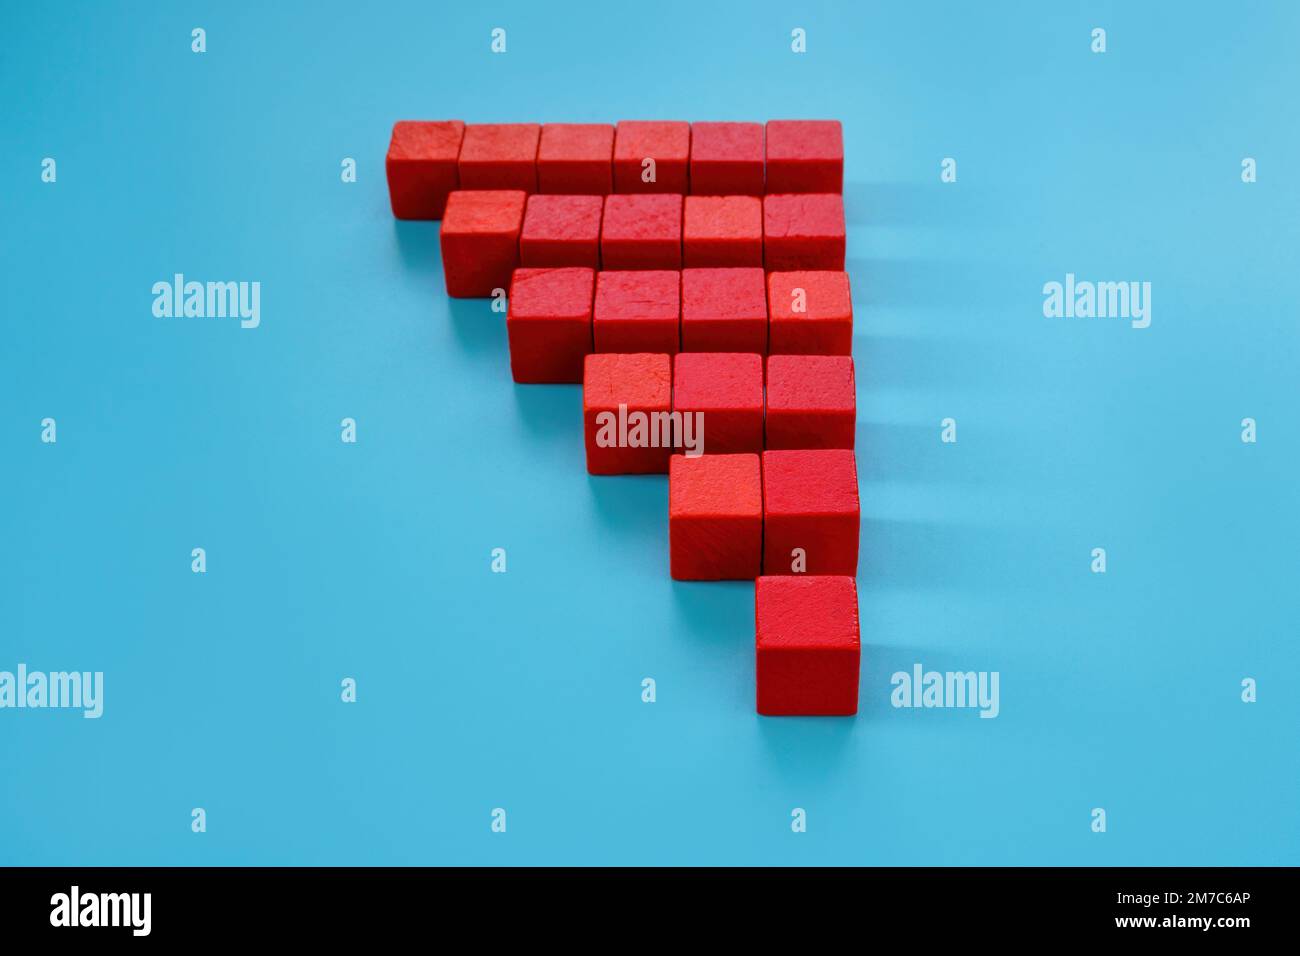 Pyramide des cubes rouges comme un concept d'augmentation, de croissance ou d'ajout. Banque D'Images